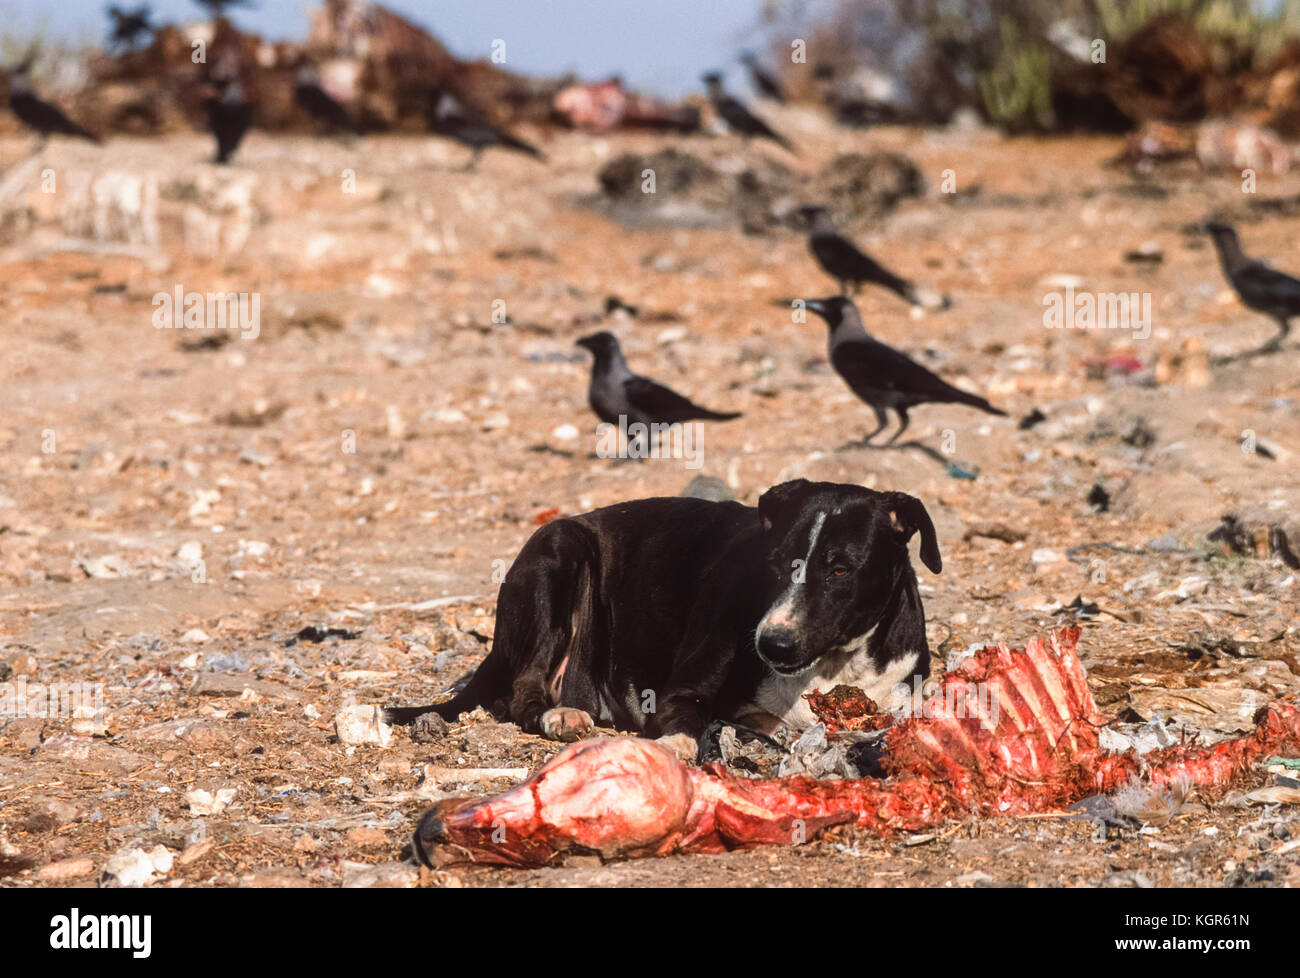 Wilde Hund (Canis familiaris oder Canis Lupus Familiaris), Scavenging auf Schlachtkörper Tier dump, Rajasthan, Indien Stockfoto